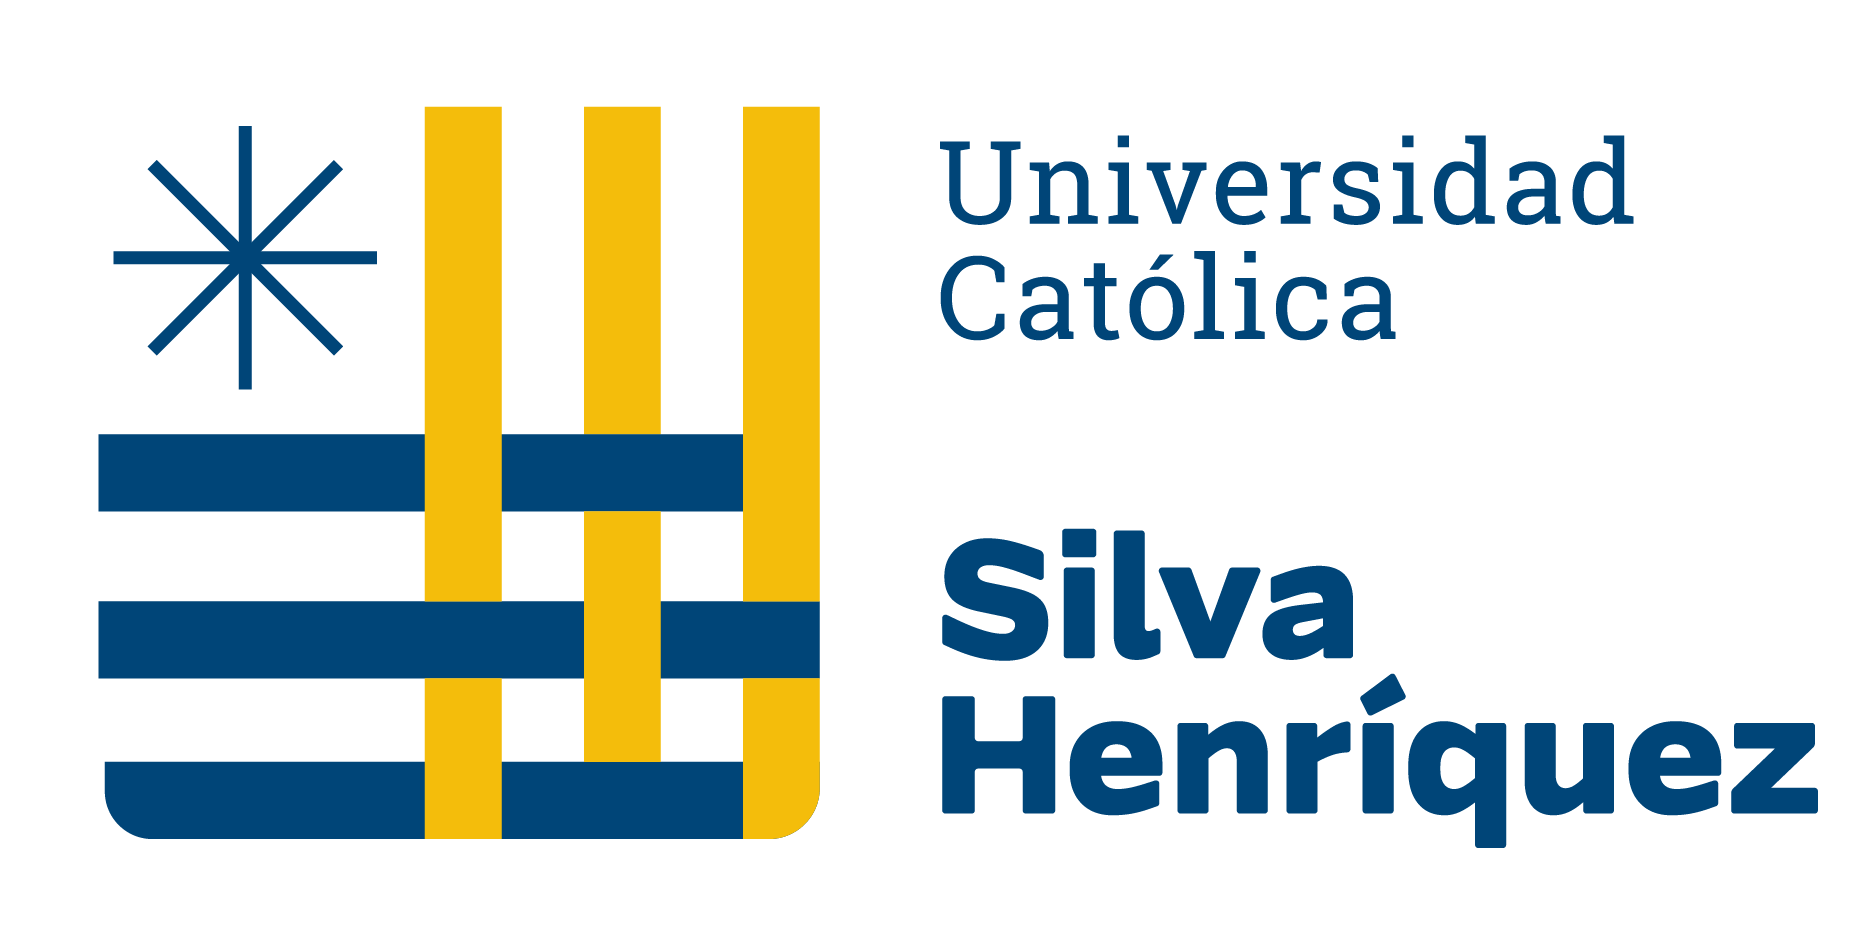 Silva Henriquez Catholic University logo